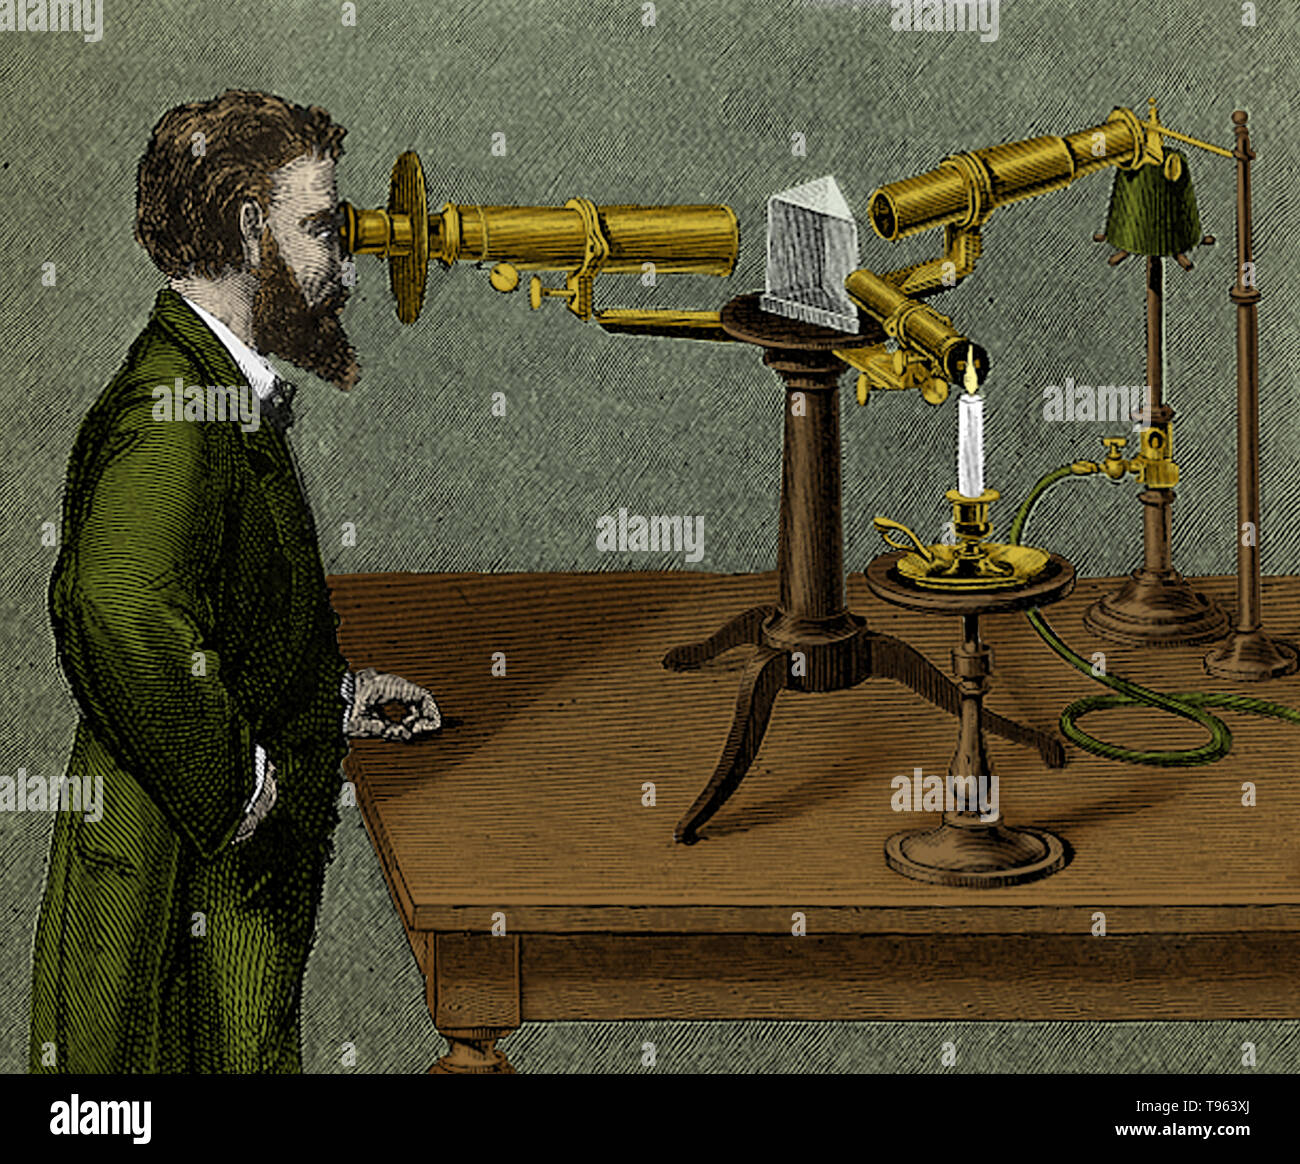 En 1830, Simms, opticien, faite d'une amélioration de la construction de le spectroscope en plaçant une lentille en face du prisme, de telle sorte que l'entaille était dans l'objectif. Cette lentille se transforme la lumière après son passage par la fente en un faisceau cylindrique, avant de pénétrer dans le prisme. Une autre lentille a aussi été introduit par lui qui reçoit le faisceau circulaire émergeant du prisme et l'oblige à jeter une image de la fente, ce qui peut être multiplié au plaisir pour chaque rayon. L'objectif entre le prisme et la fente est appelée la lentille de collimation. Cette image a été améliorée couleur. Banque D'Images